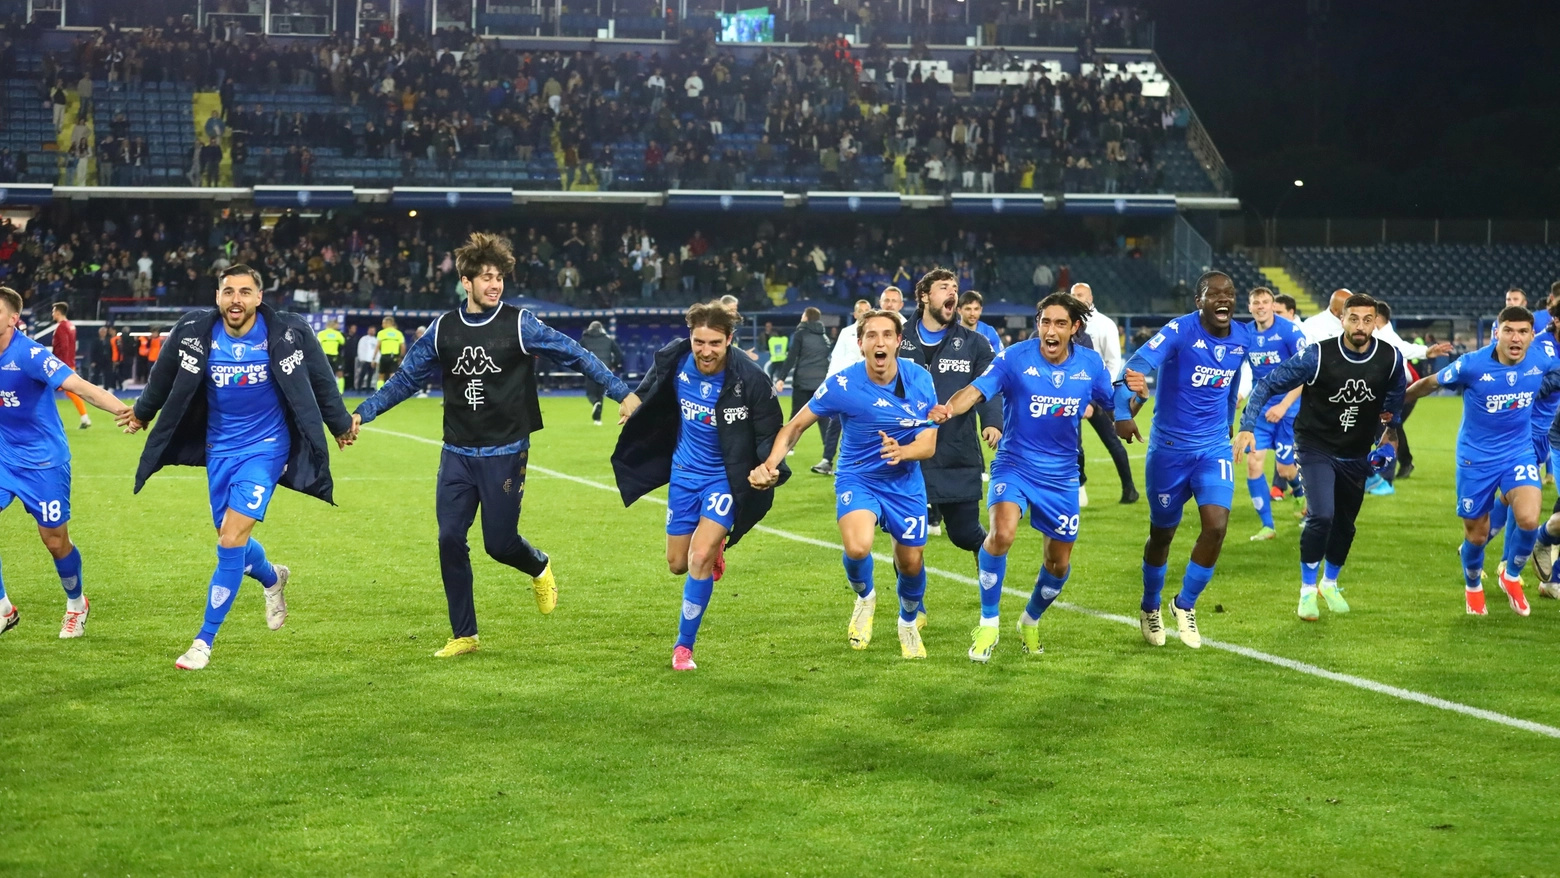 La squadra esulta dopo la vittoria contro il Torino (Foto Gasperini/Germogli)